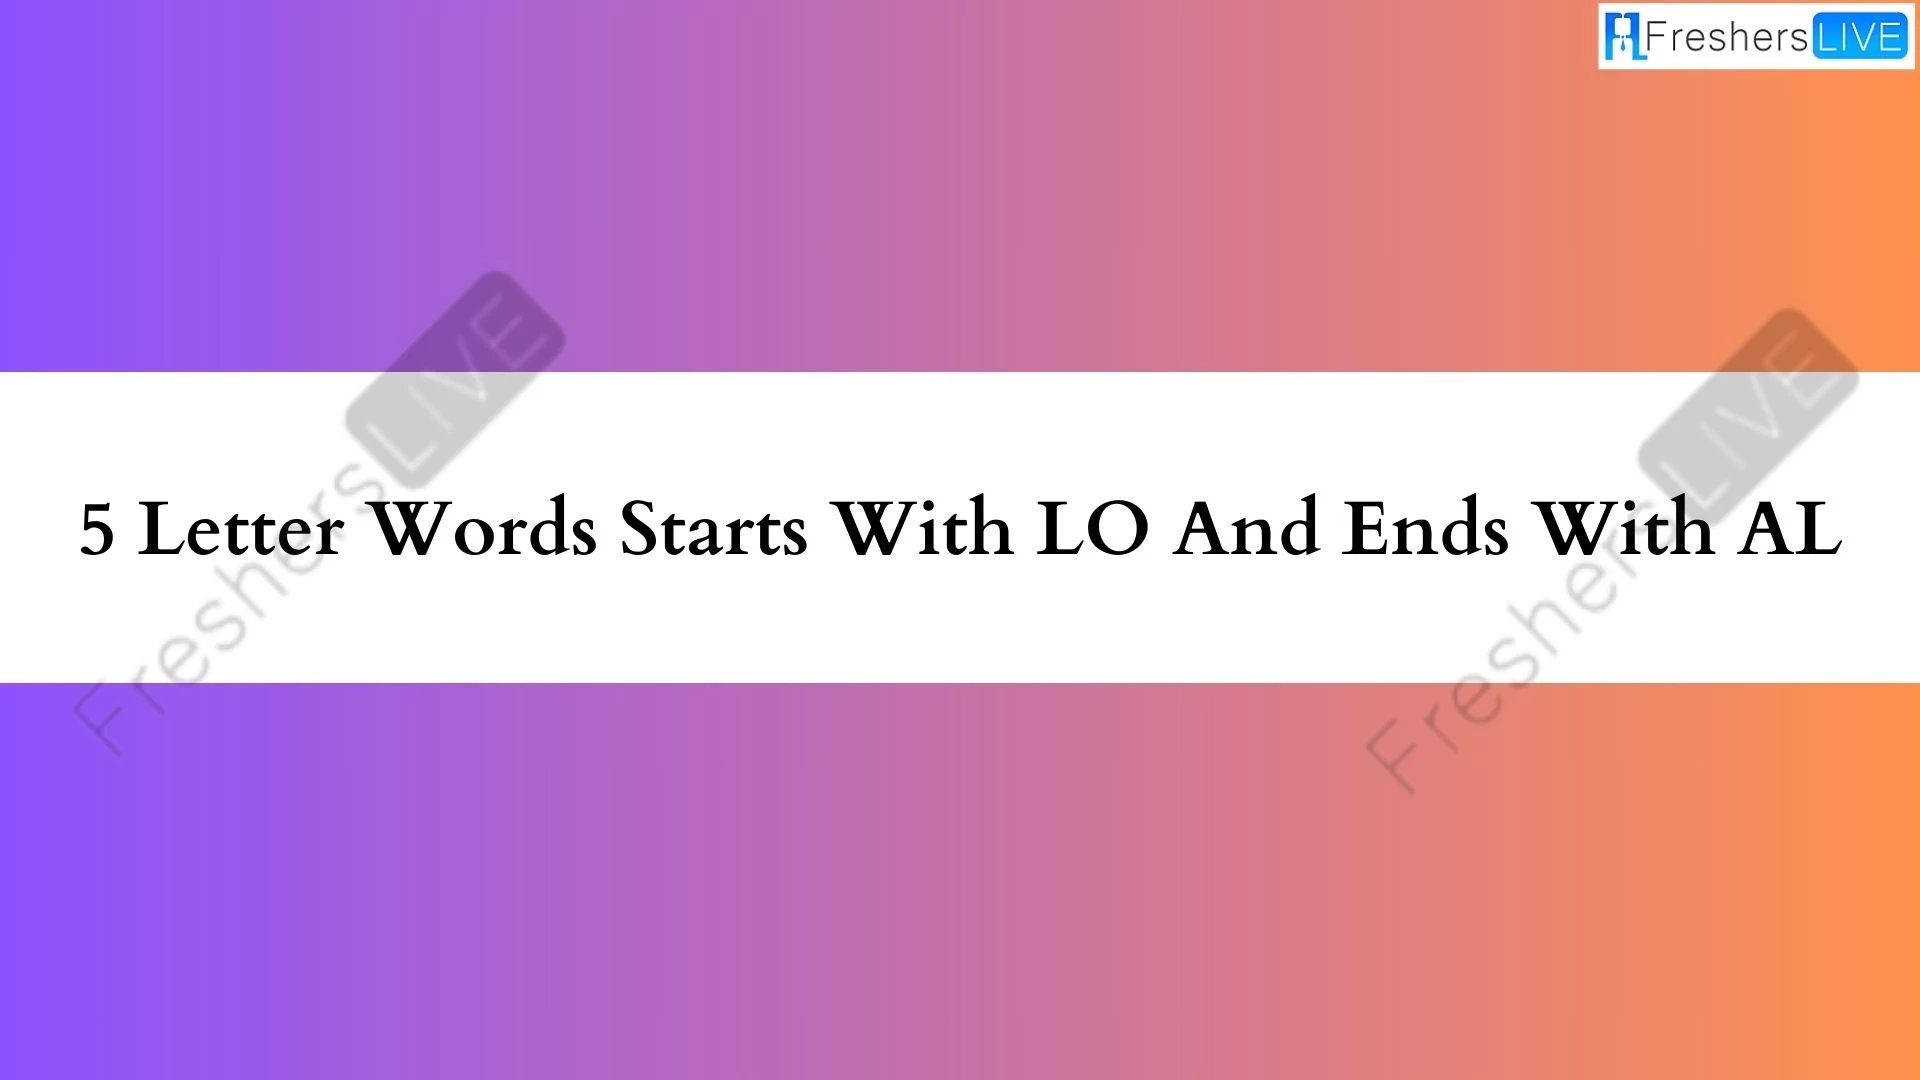 Palabras de 5 letras que empiezan con LO y terminan con AL.